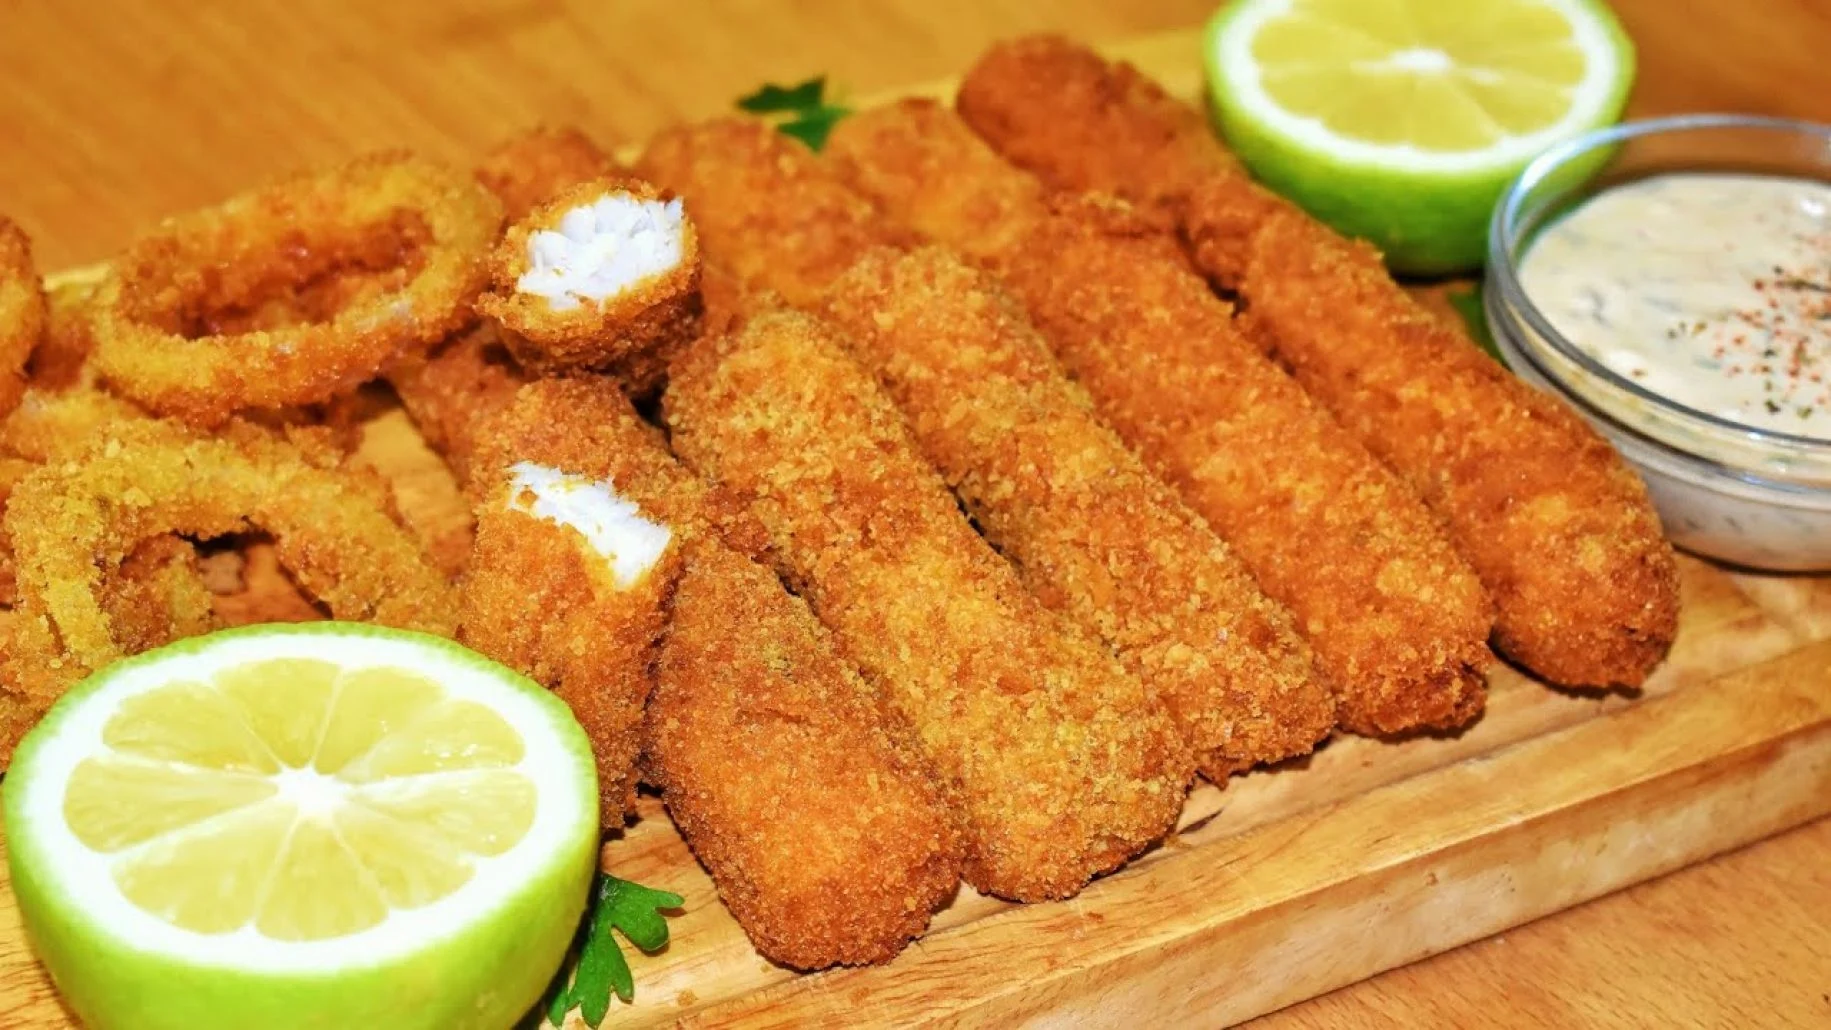 أصابع السمك المقلي أشهي المأكولات البحرية طريقة قلي أصابع السمك في الزيت